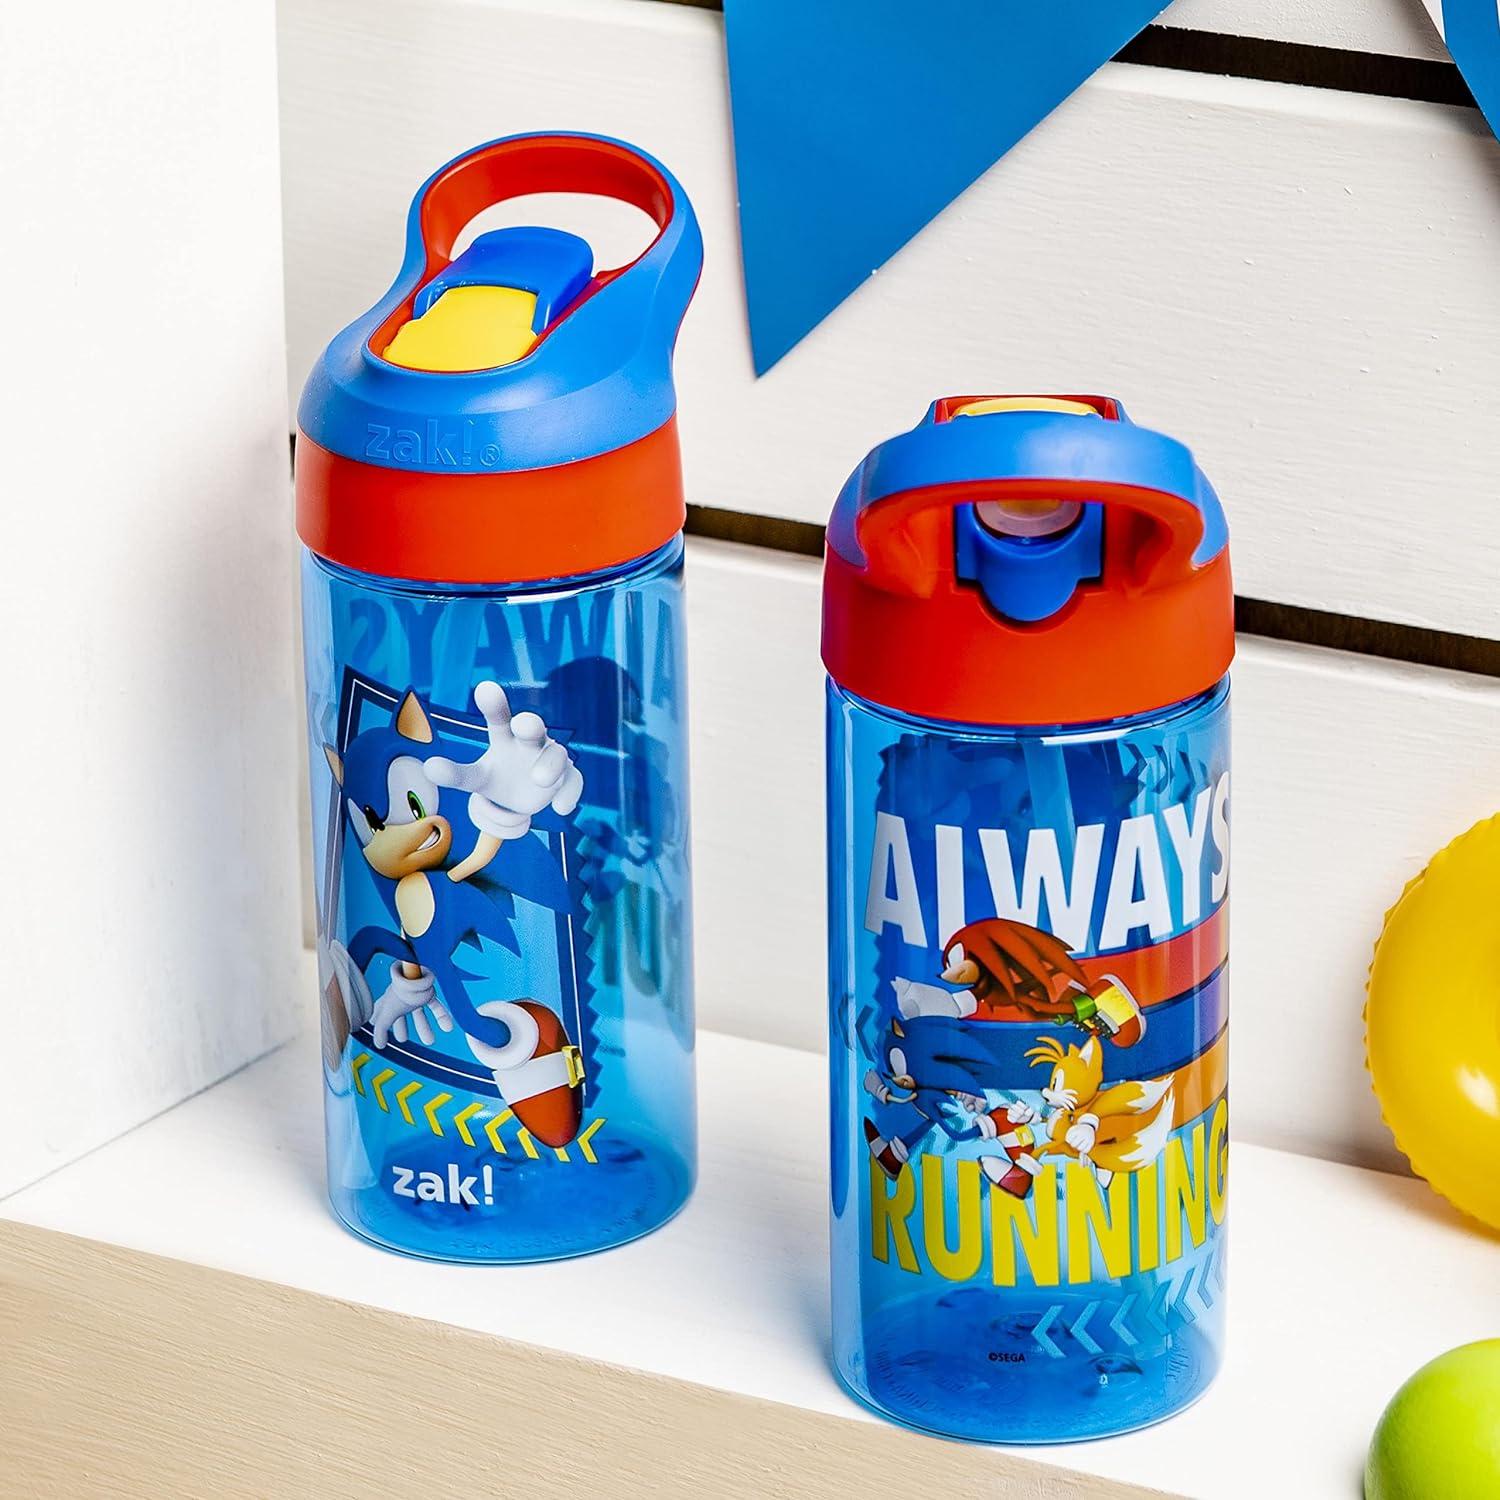 Sonic Let's Go Blue Chug Water Bottle, 25 oz.